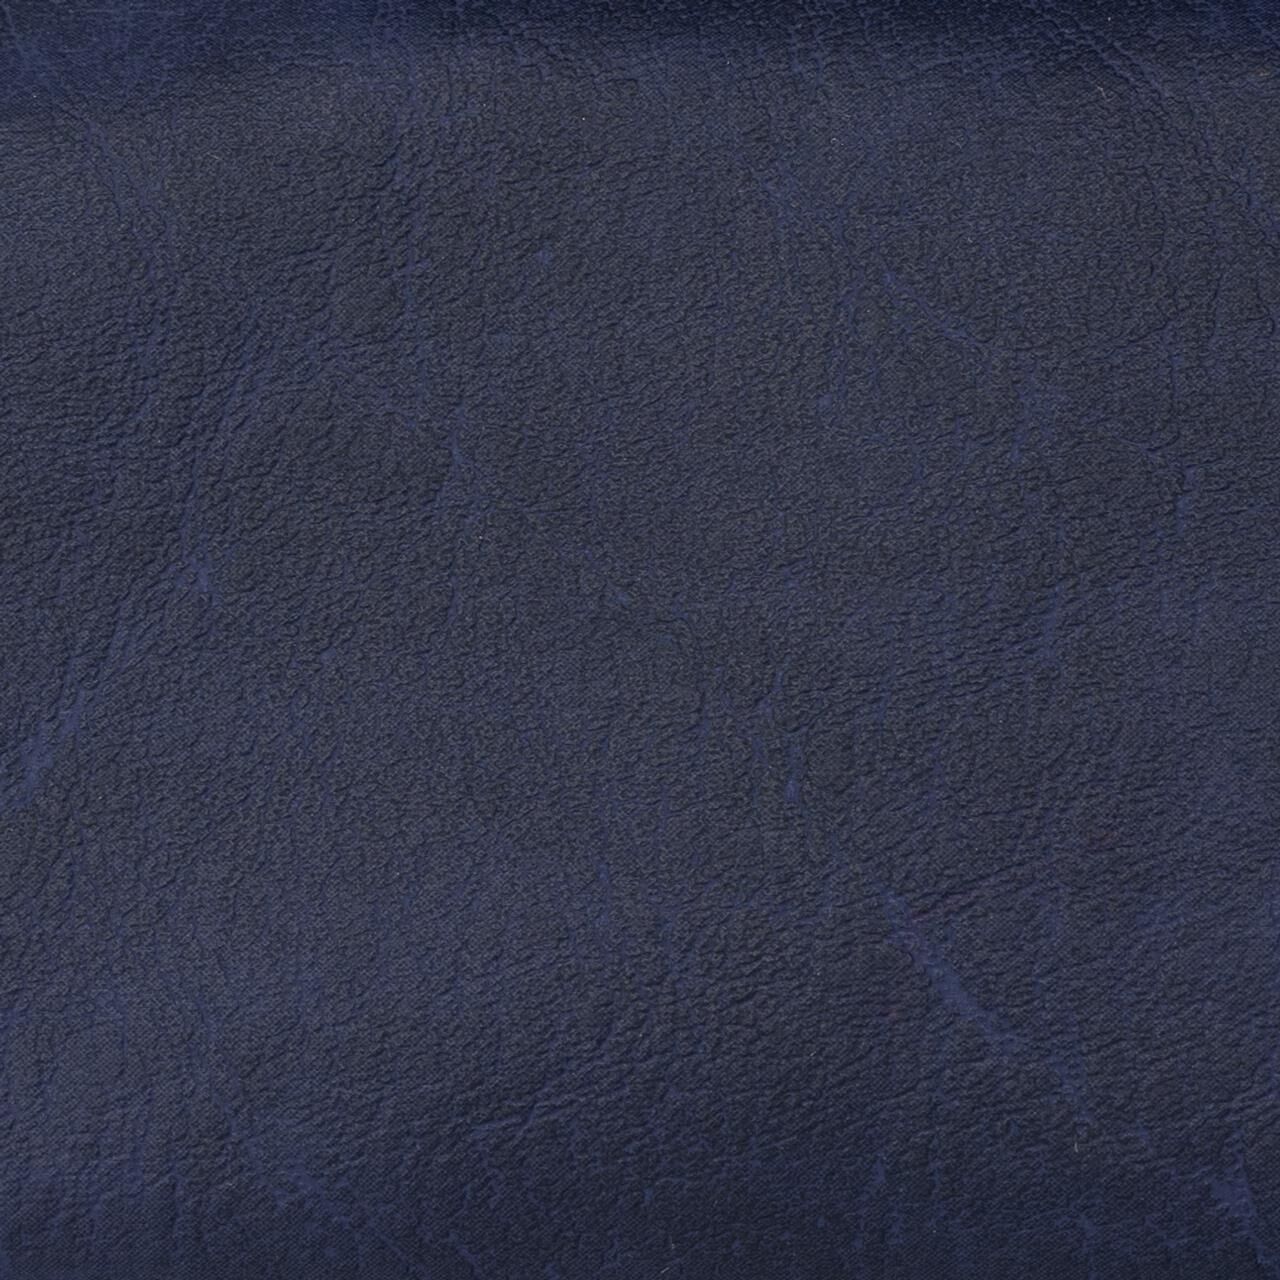 Whirlpool-Nackenkissen für Softub - 32 x 26 cm - sapphire blue